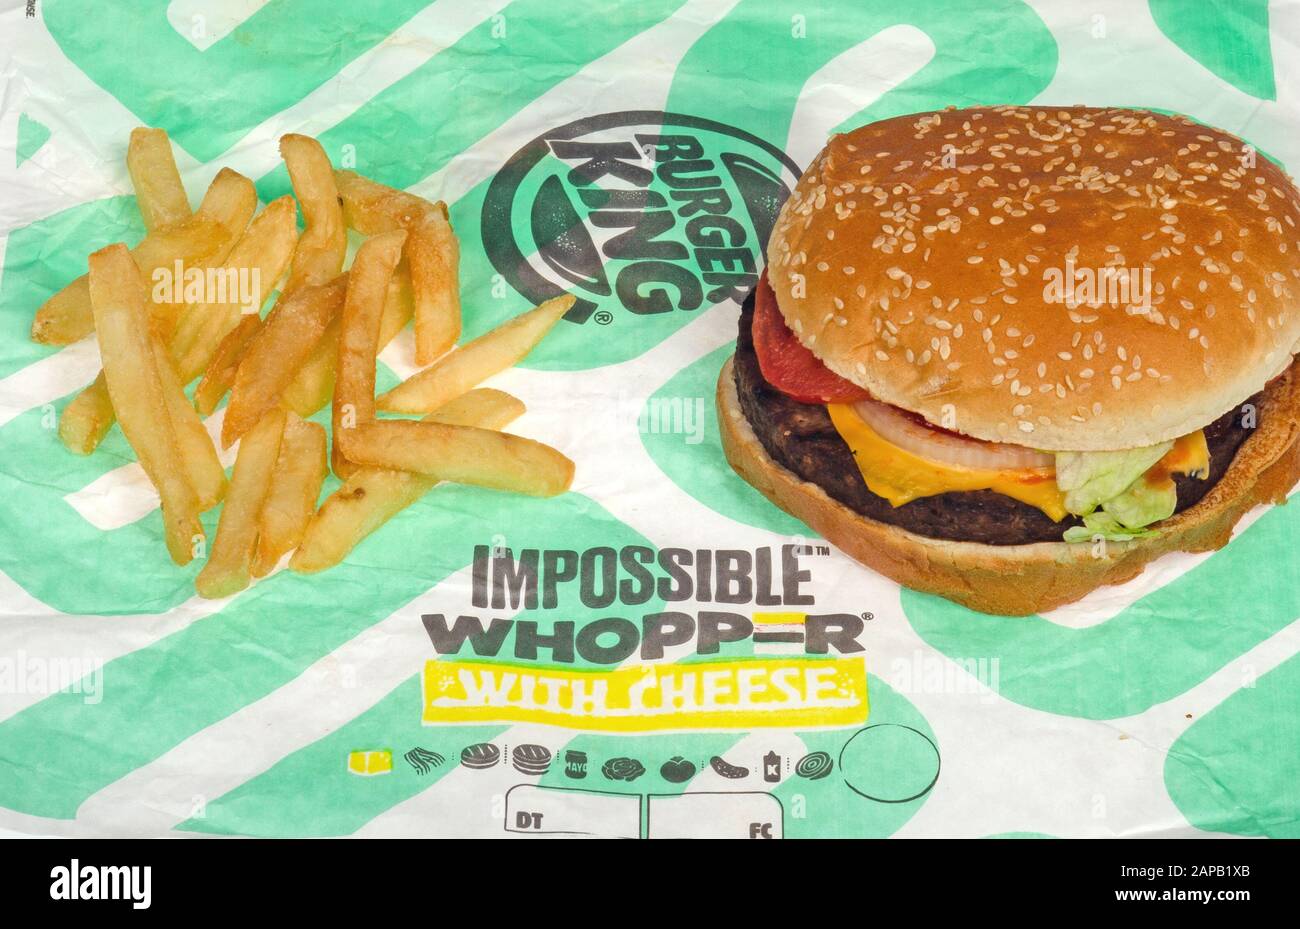 Hamburger King Whopper Impossible avec des frites ou des frites sur l'emballage Banque D'Images